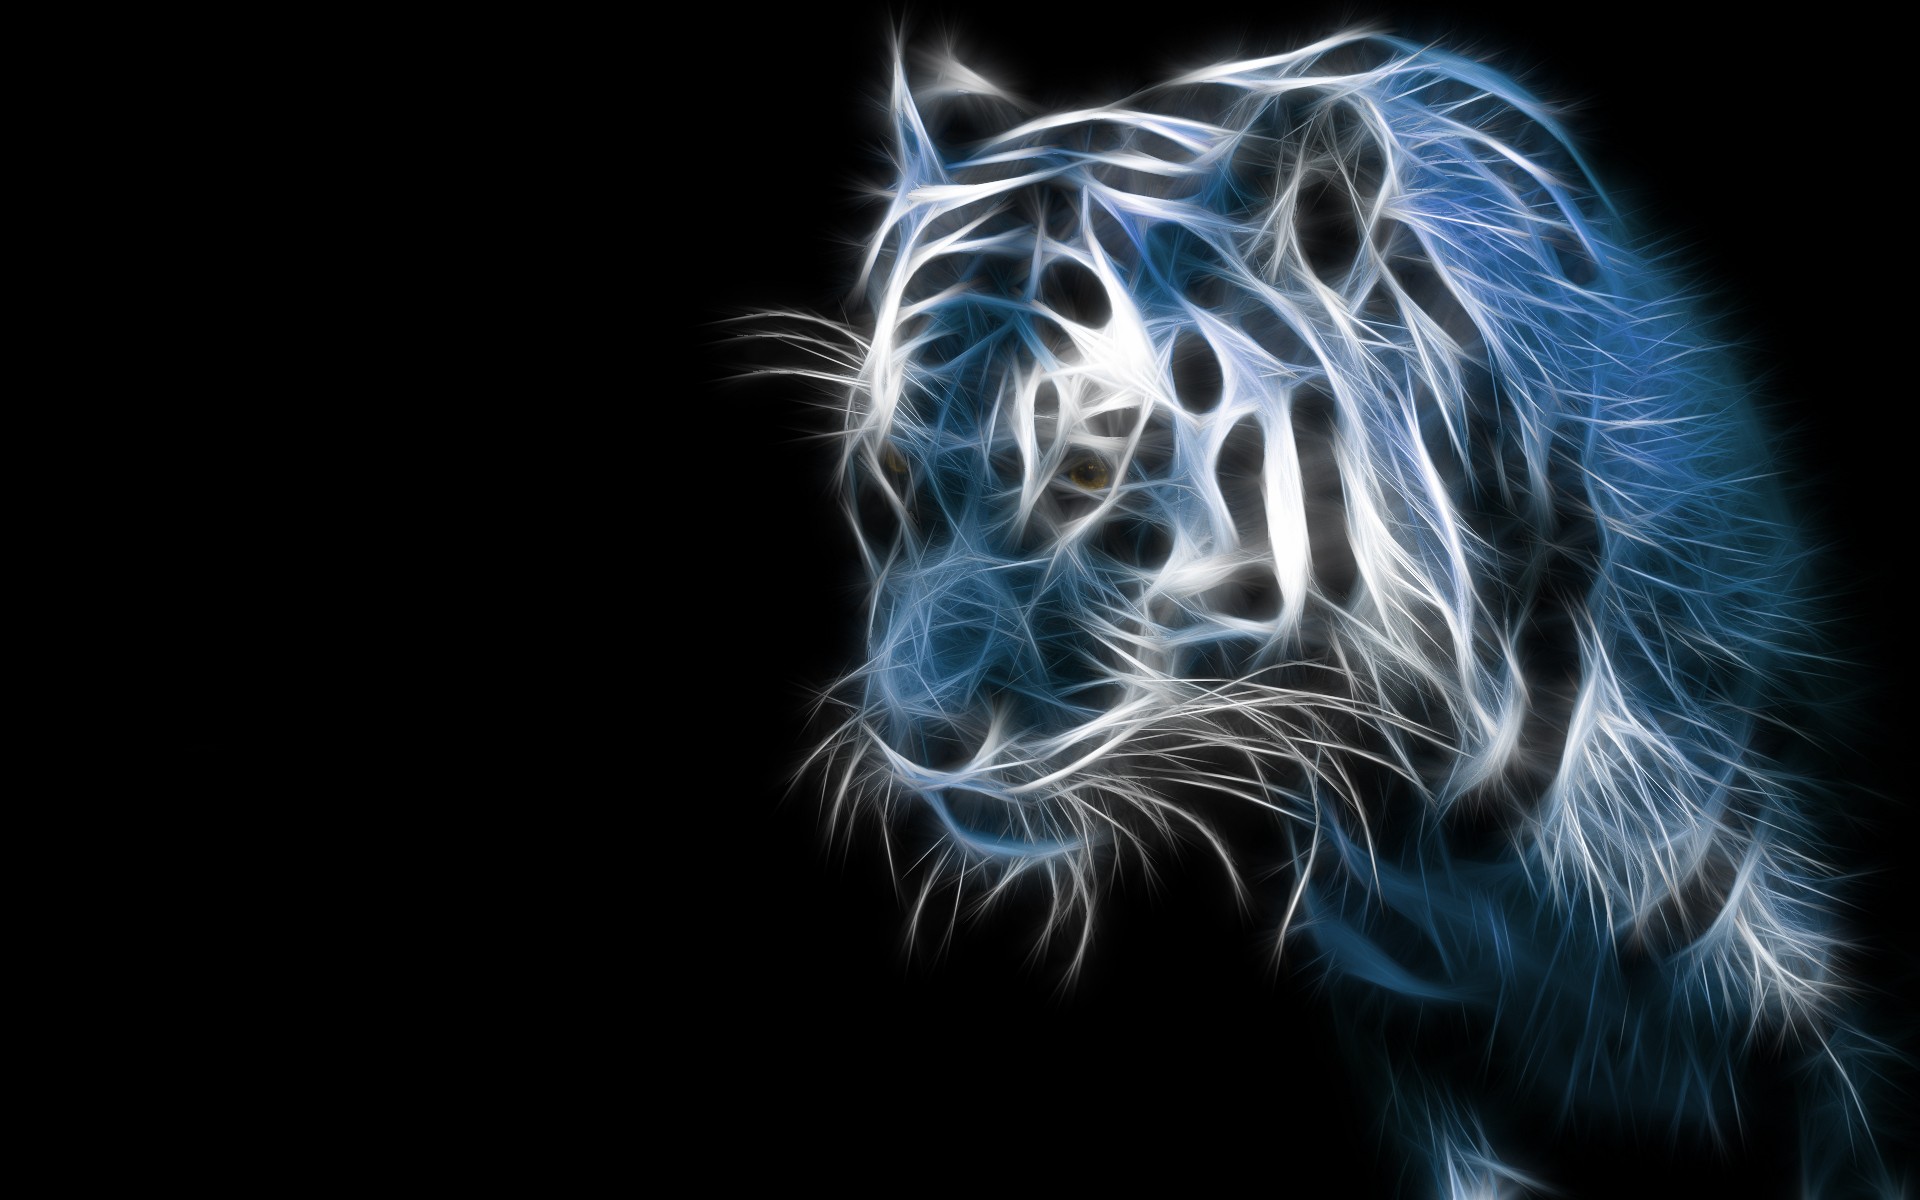 General 1920x1200 animals tiger Fractalius mammals big cats digital art simple background